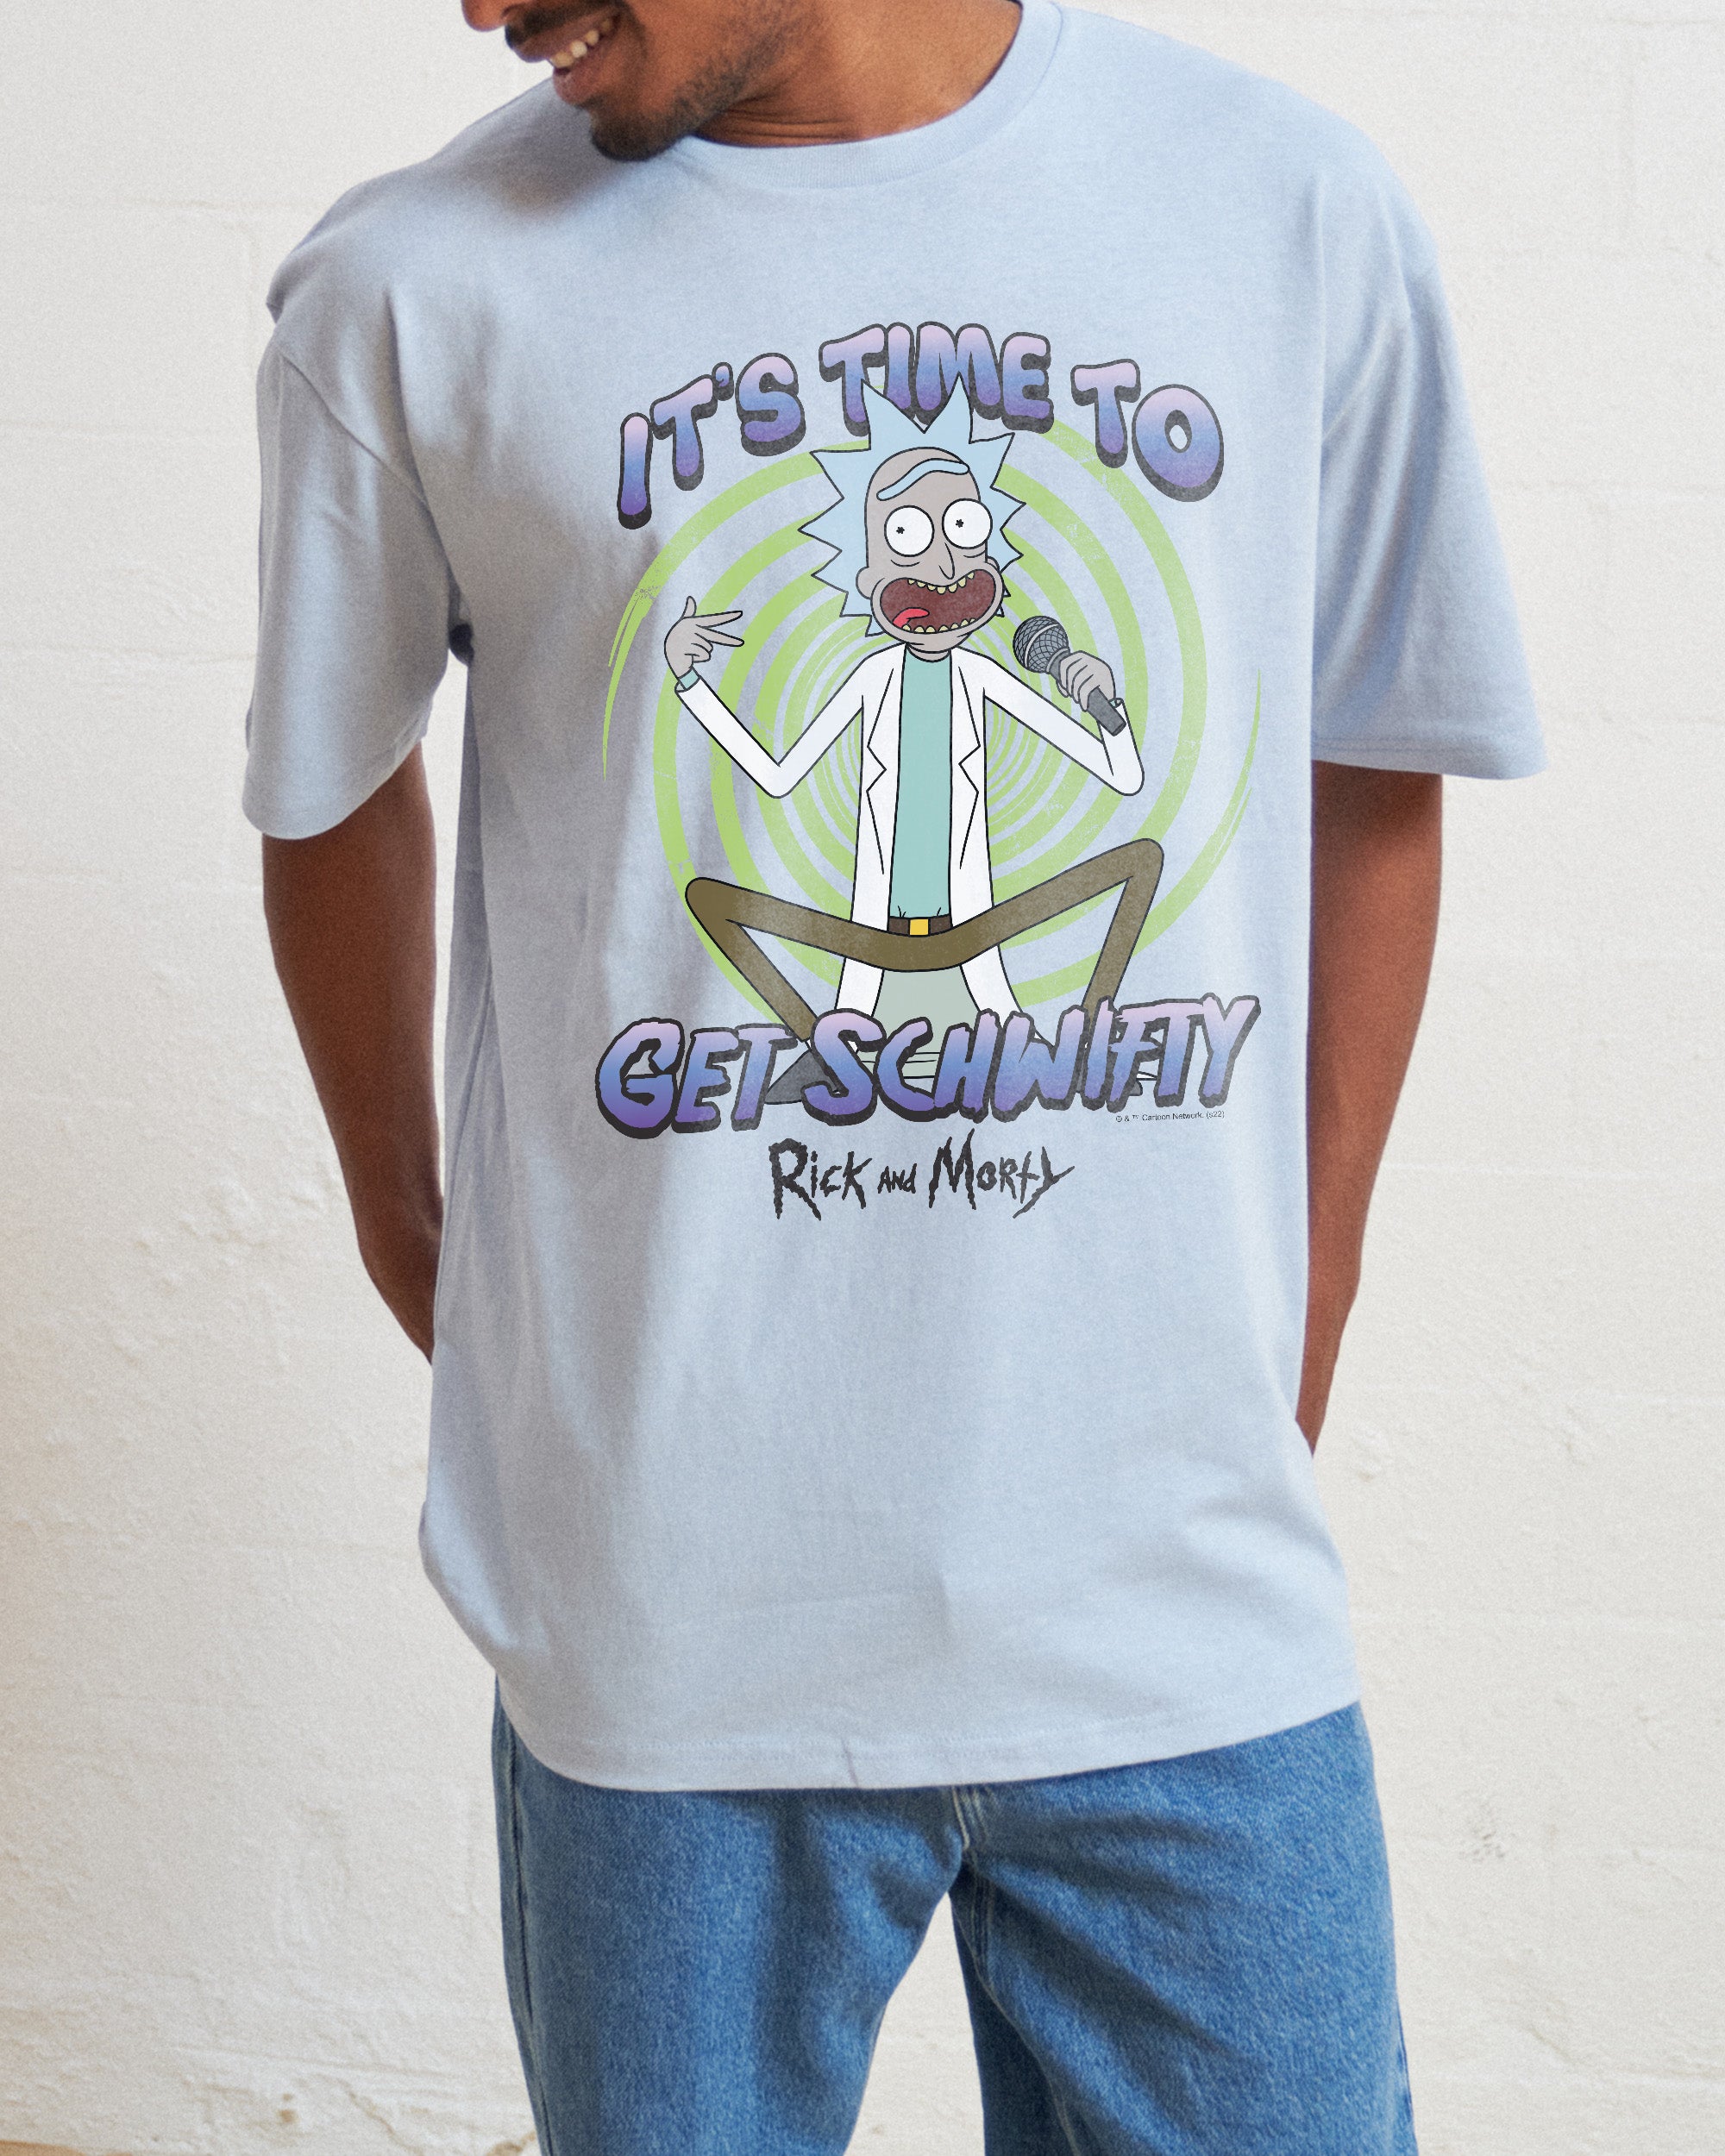 Get Schwifty T-Shirt